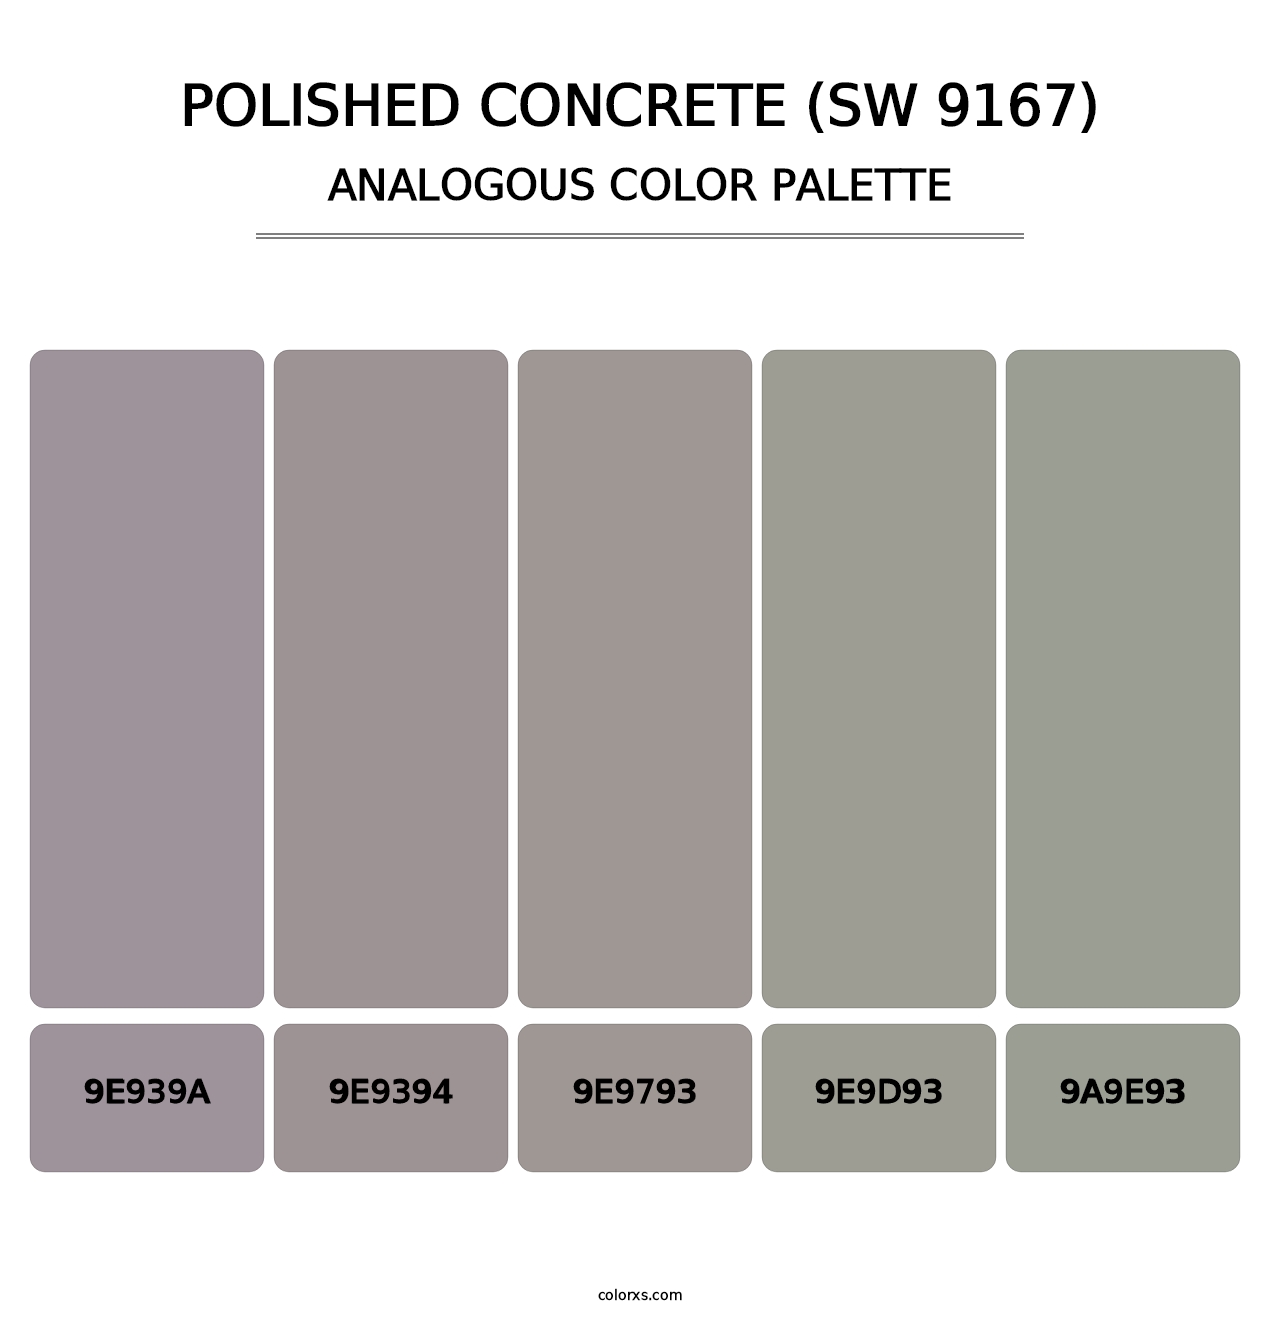 Polished Concrete (SW 9167) - Analogous Color Palette